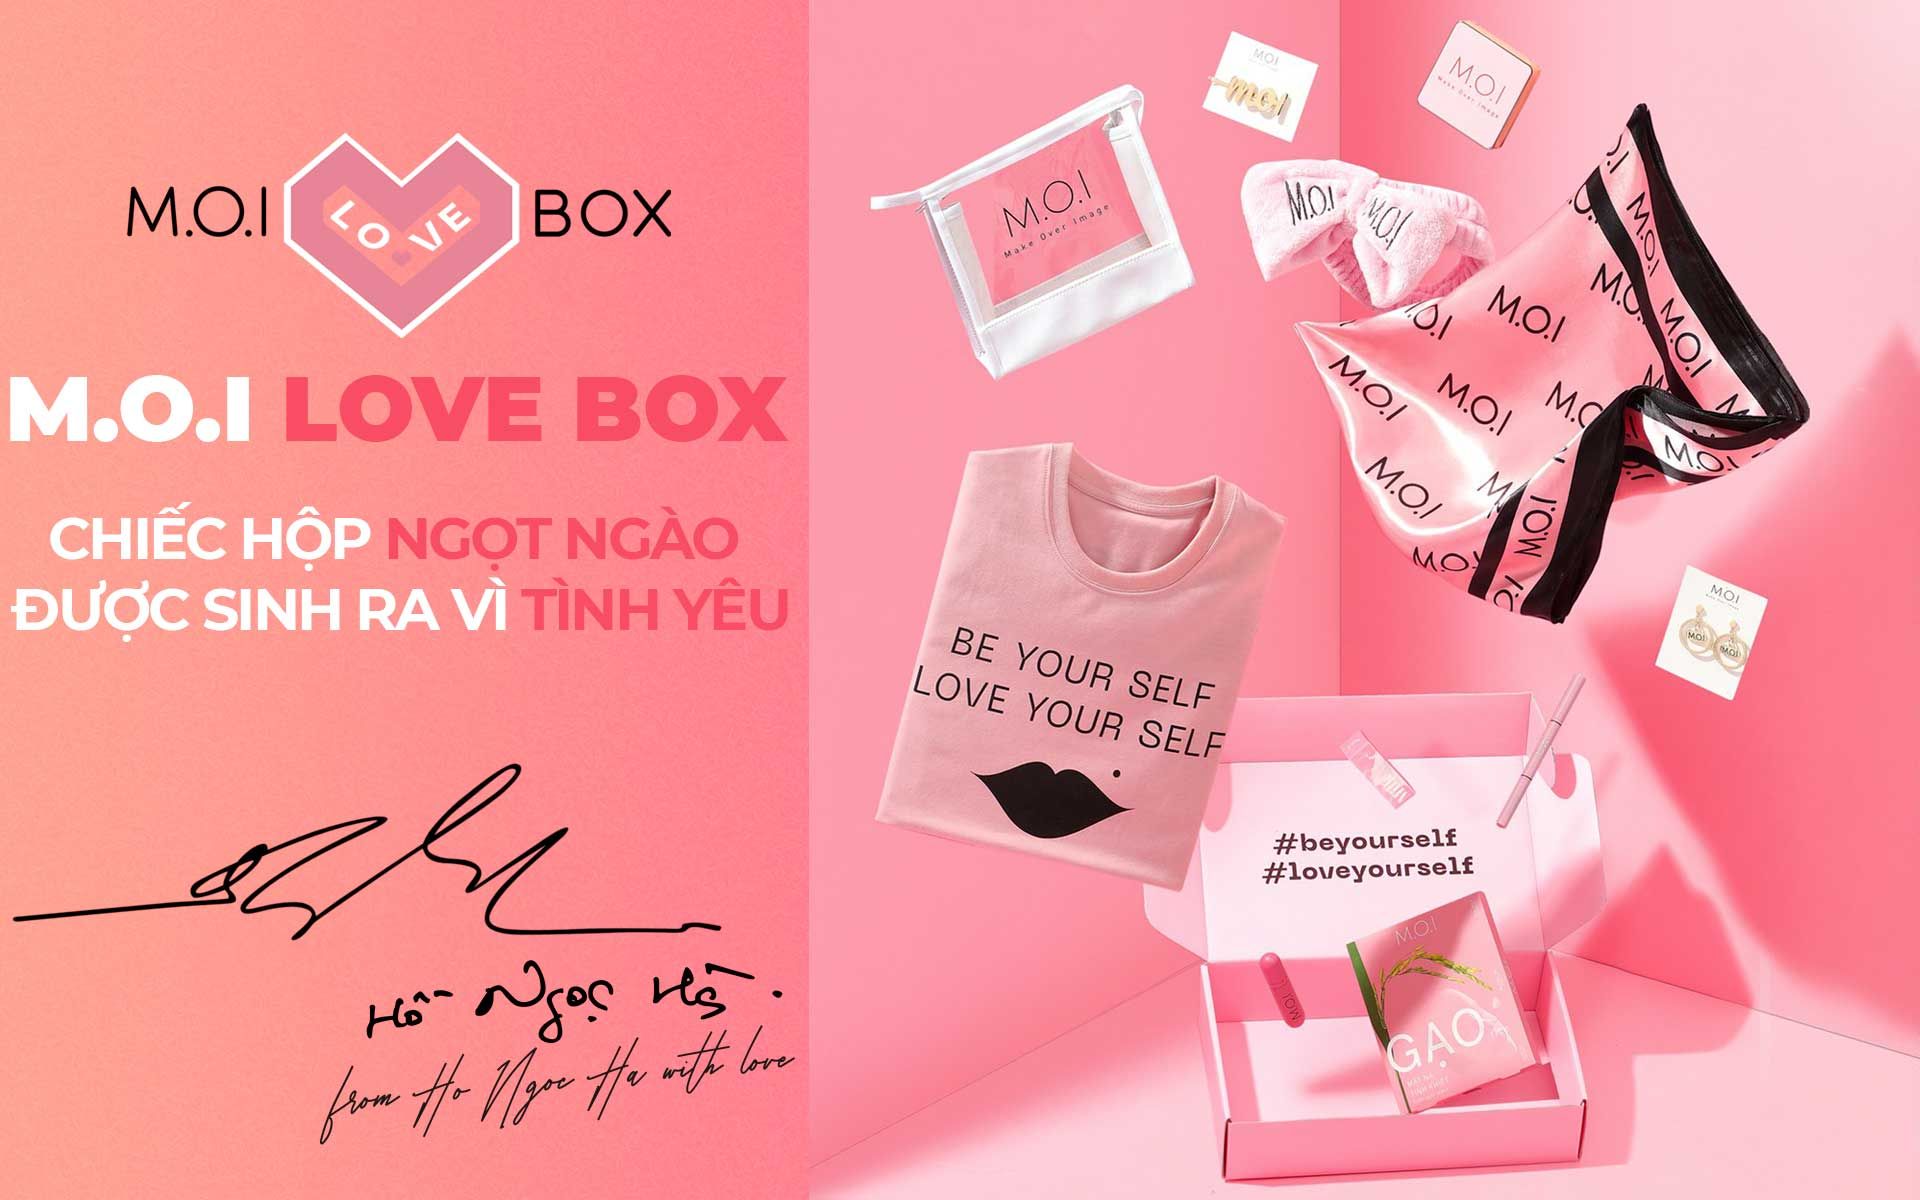 M.O.I Love Box - Chiếc hộp ngọt ngào được sinh ra vì tình yêu